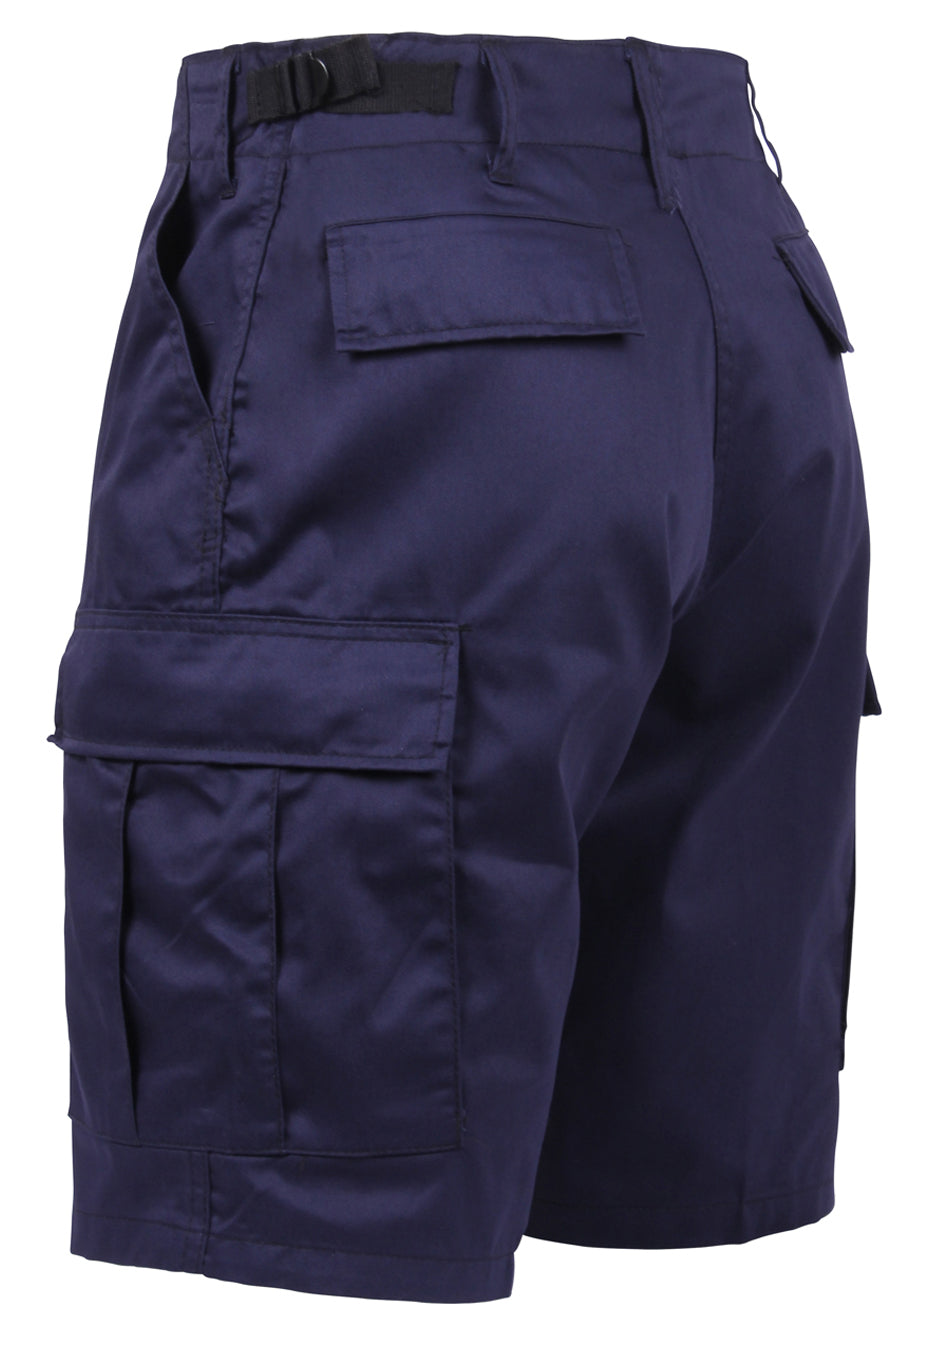 Rothco Tactical BDU Shorts - Navy Blue